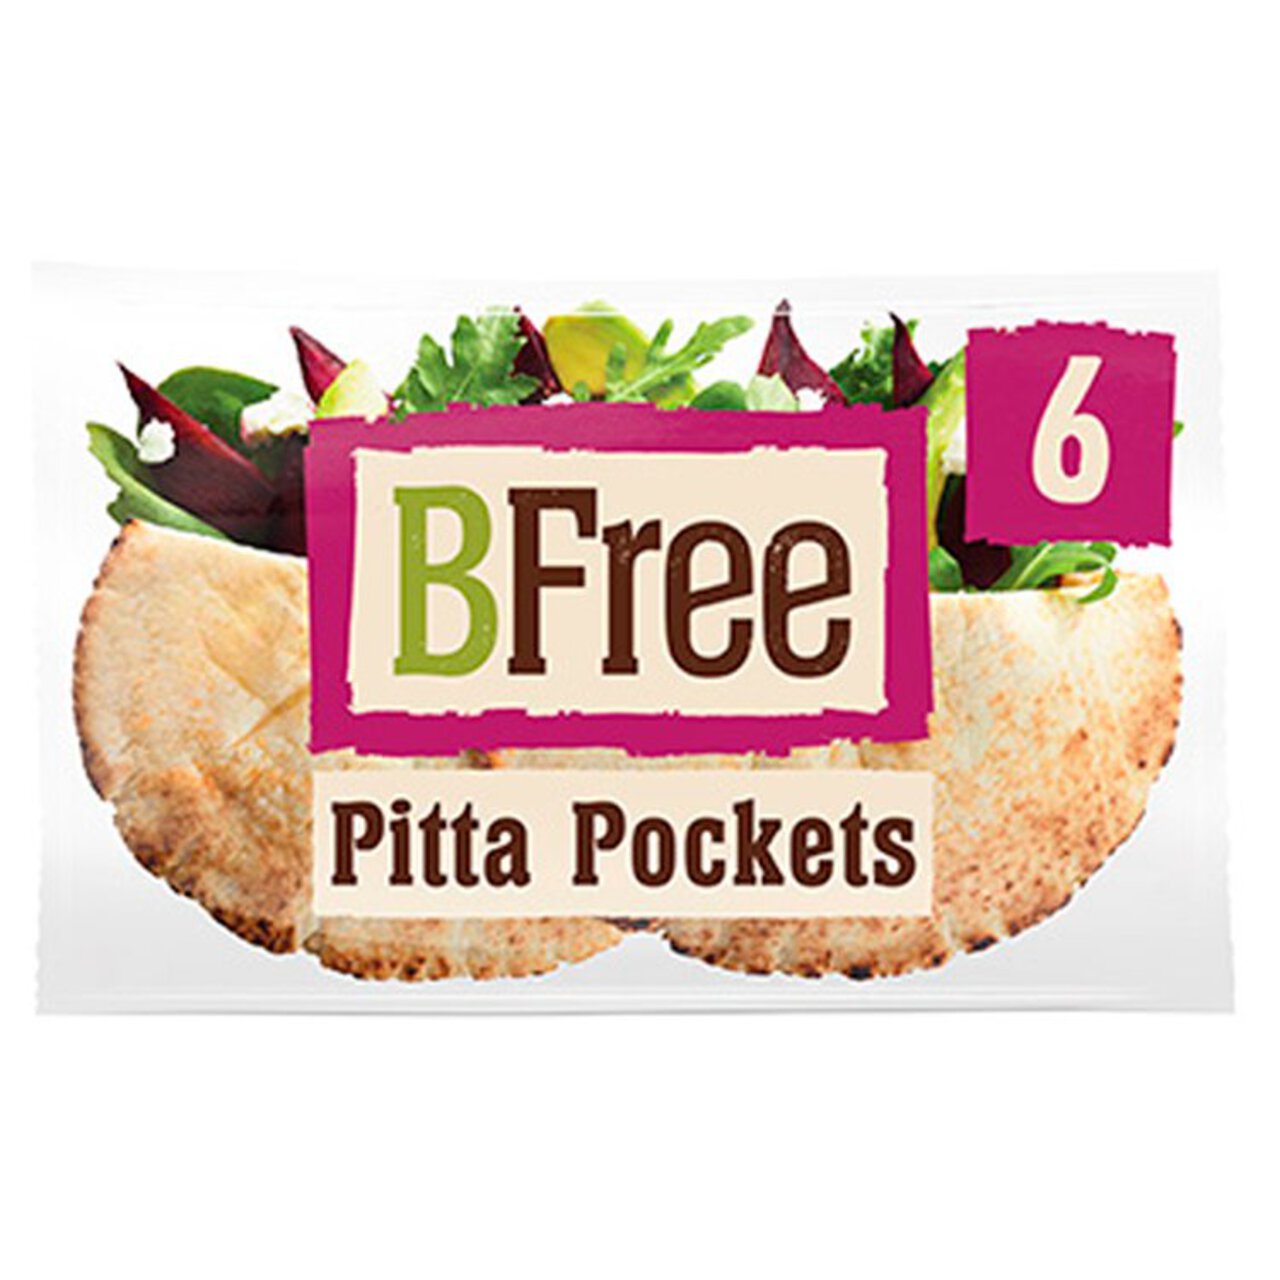 BFree Stone Baked Pitta Pocket 6 x 32g